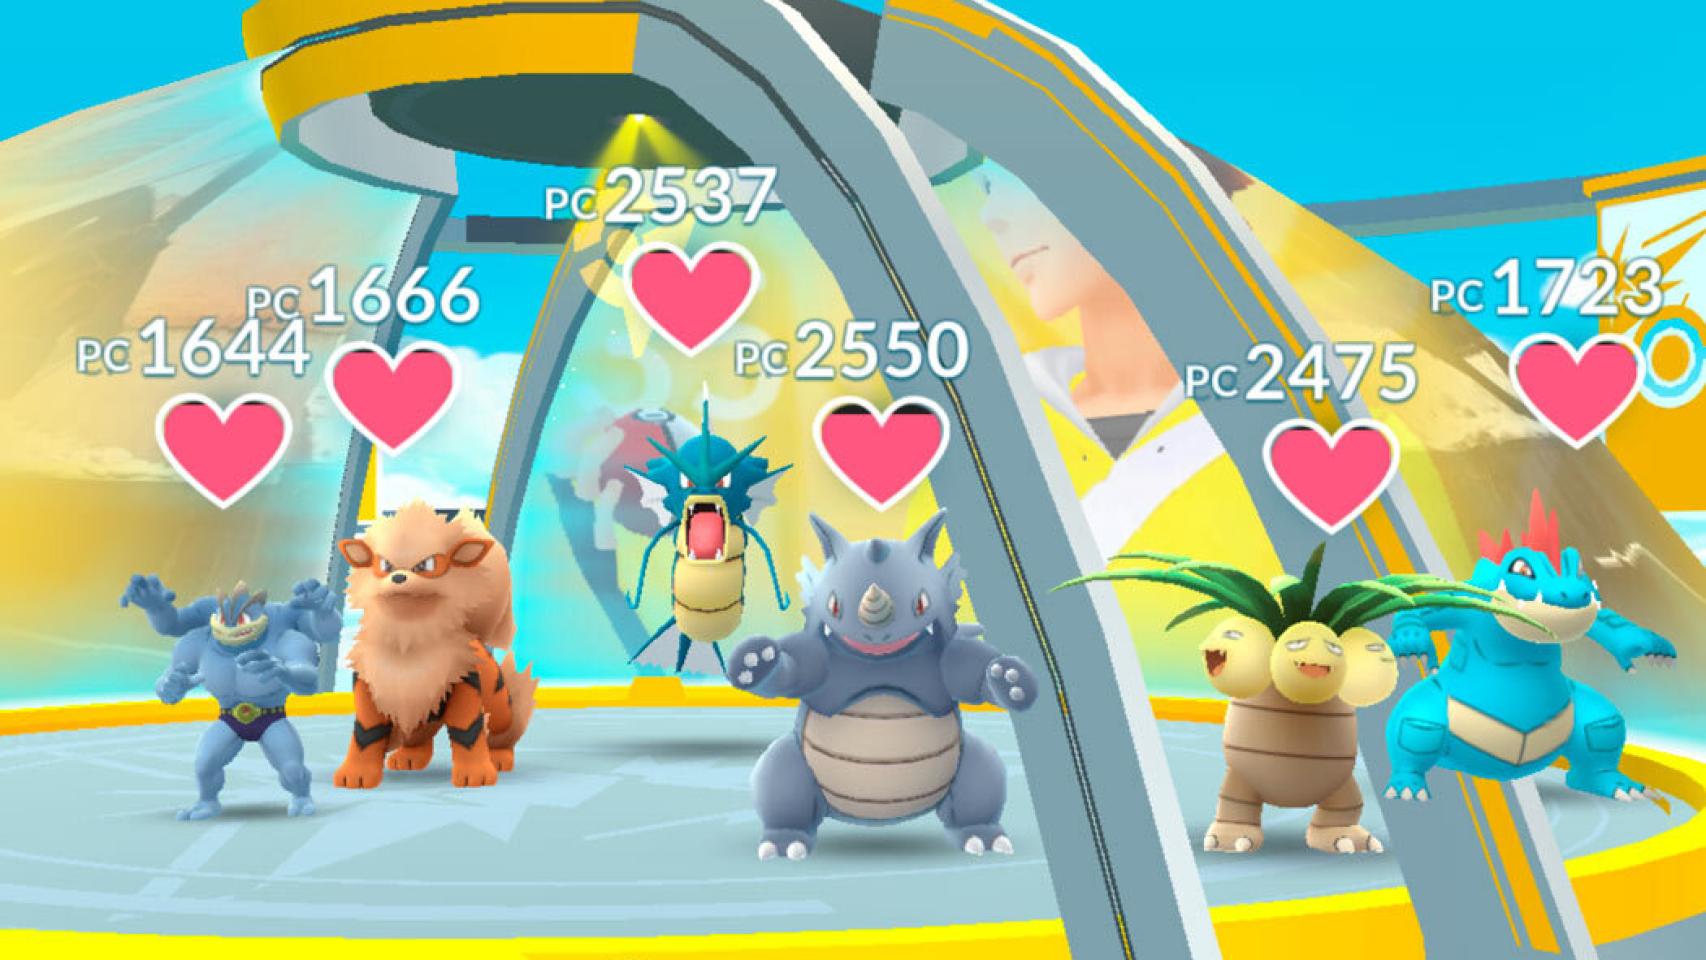 Prueba ya los nuevos gimnasios de Pokémon GO: están otra vez operativos